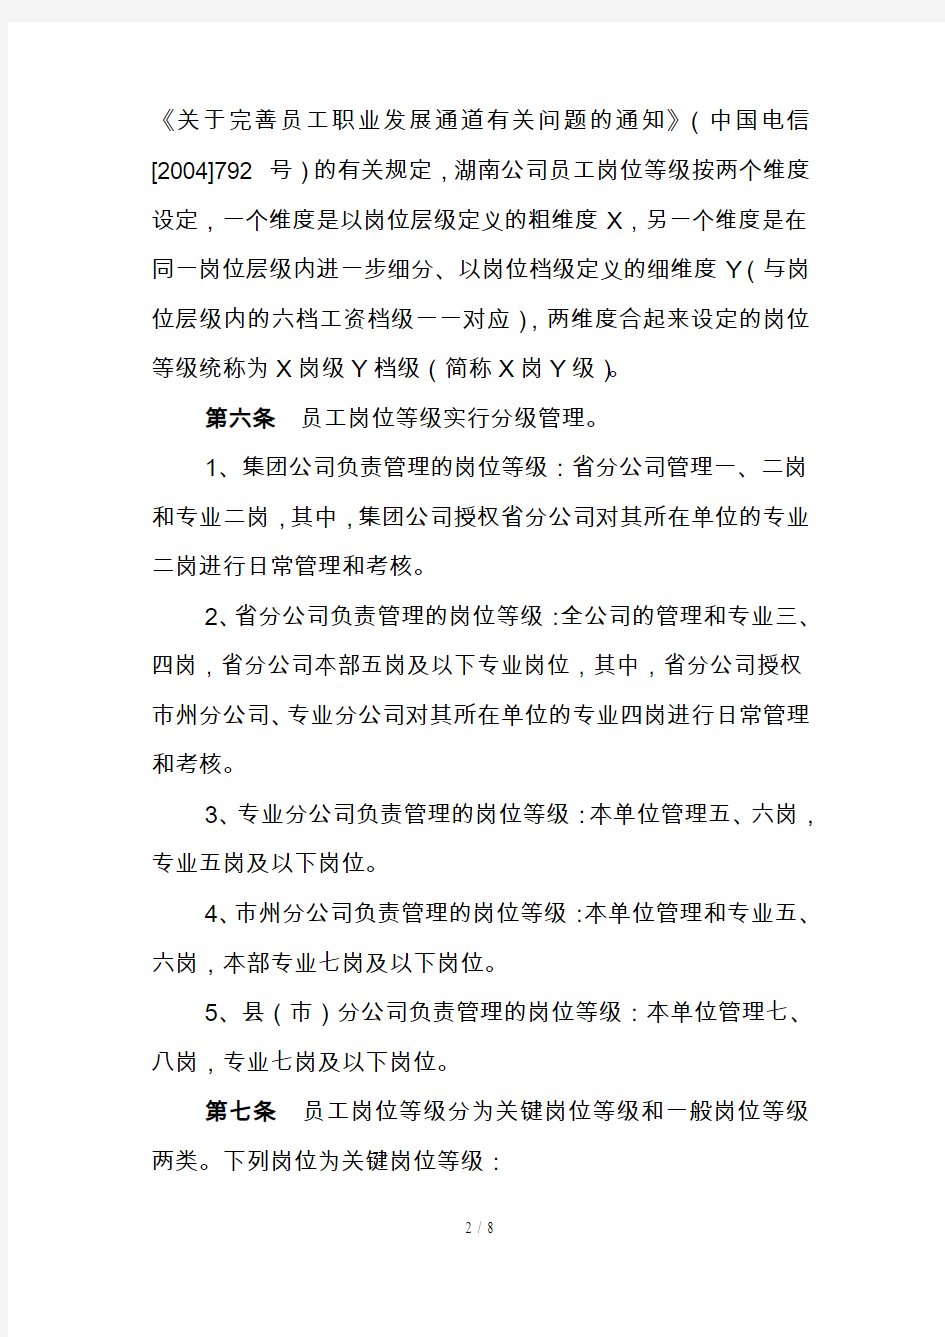 中国电信员工岗位等级常规晋升管理办法